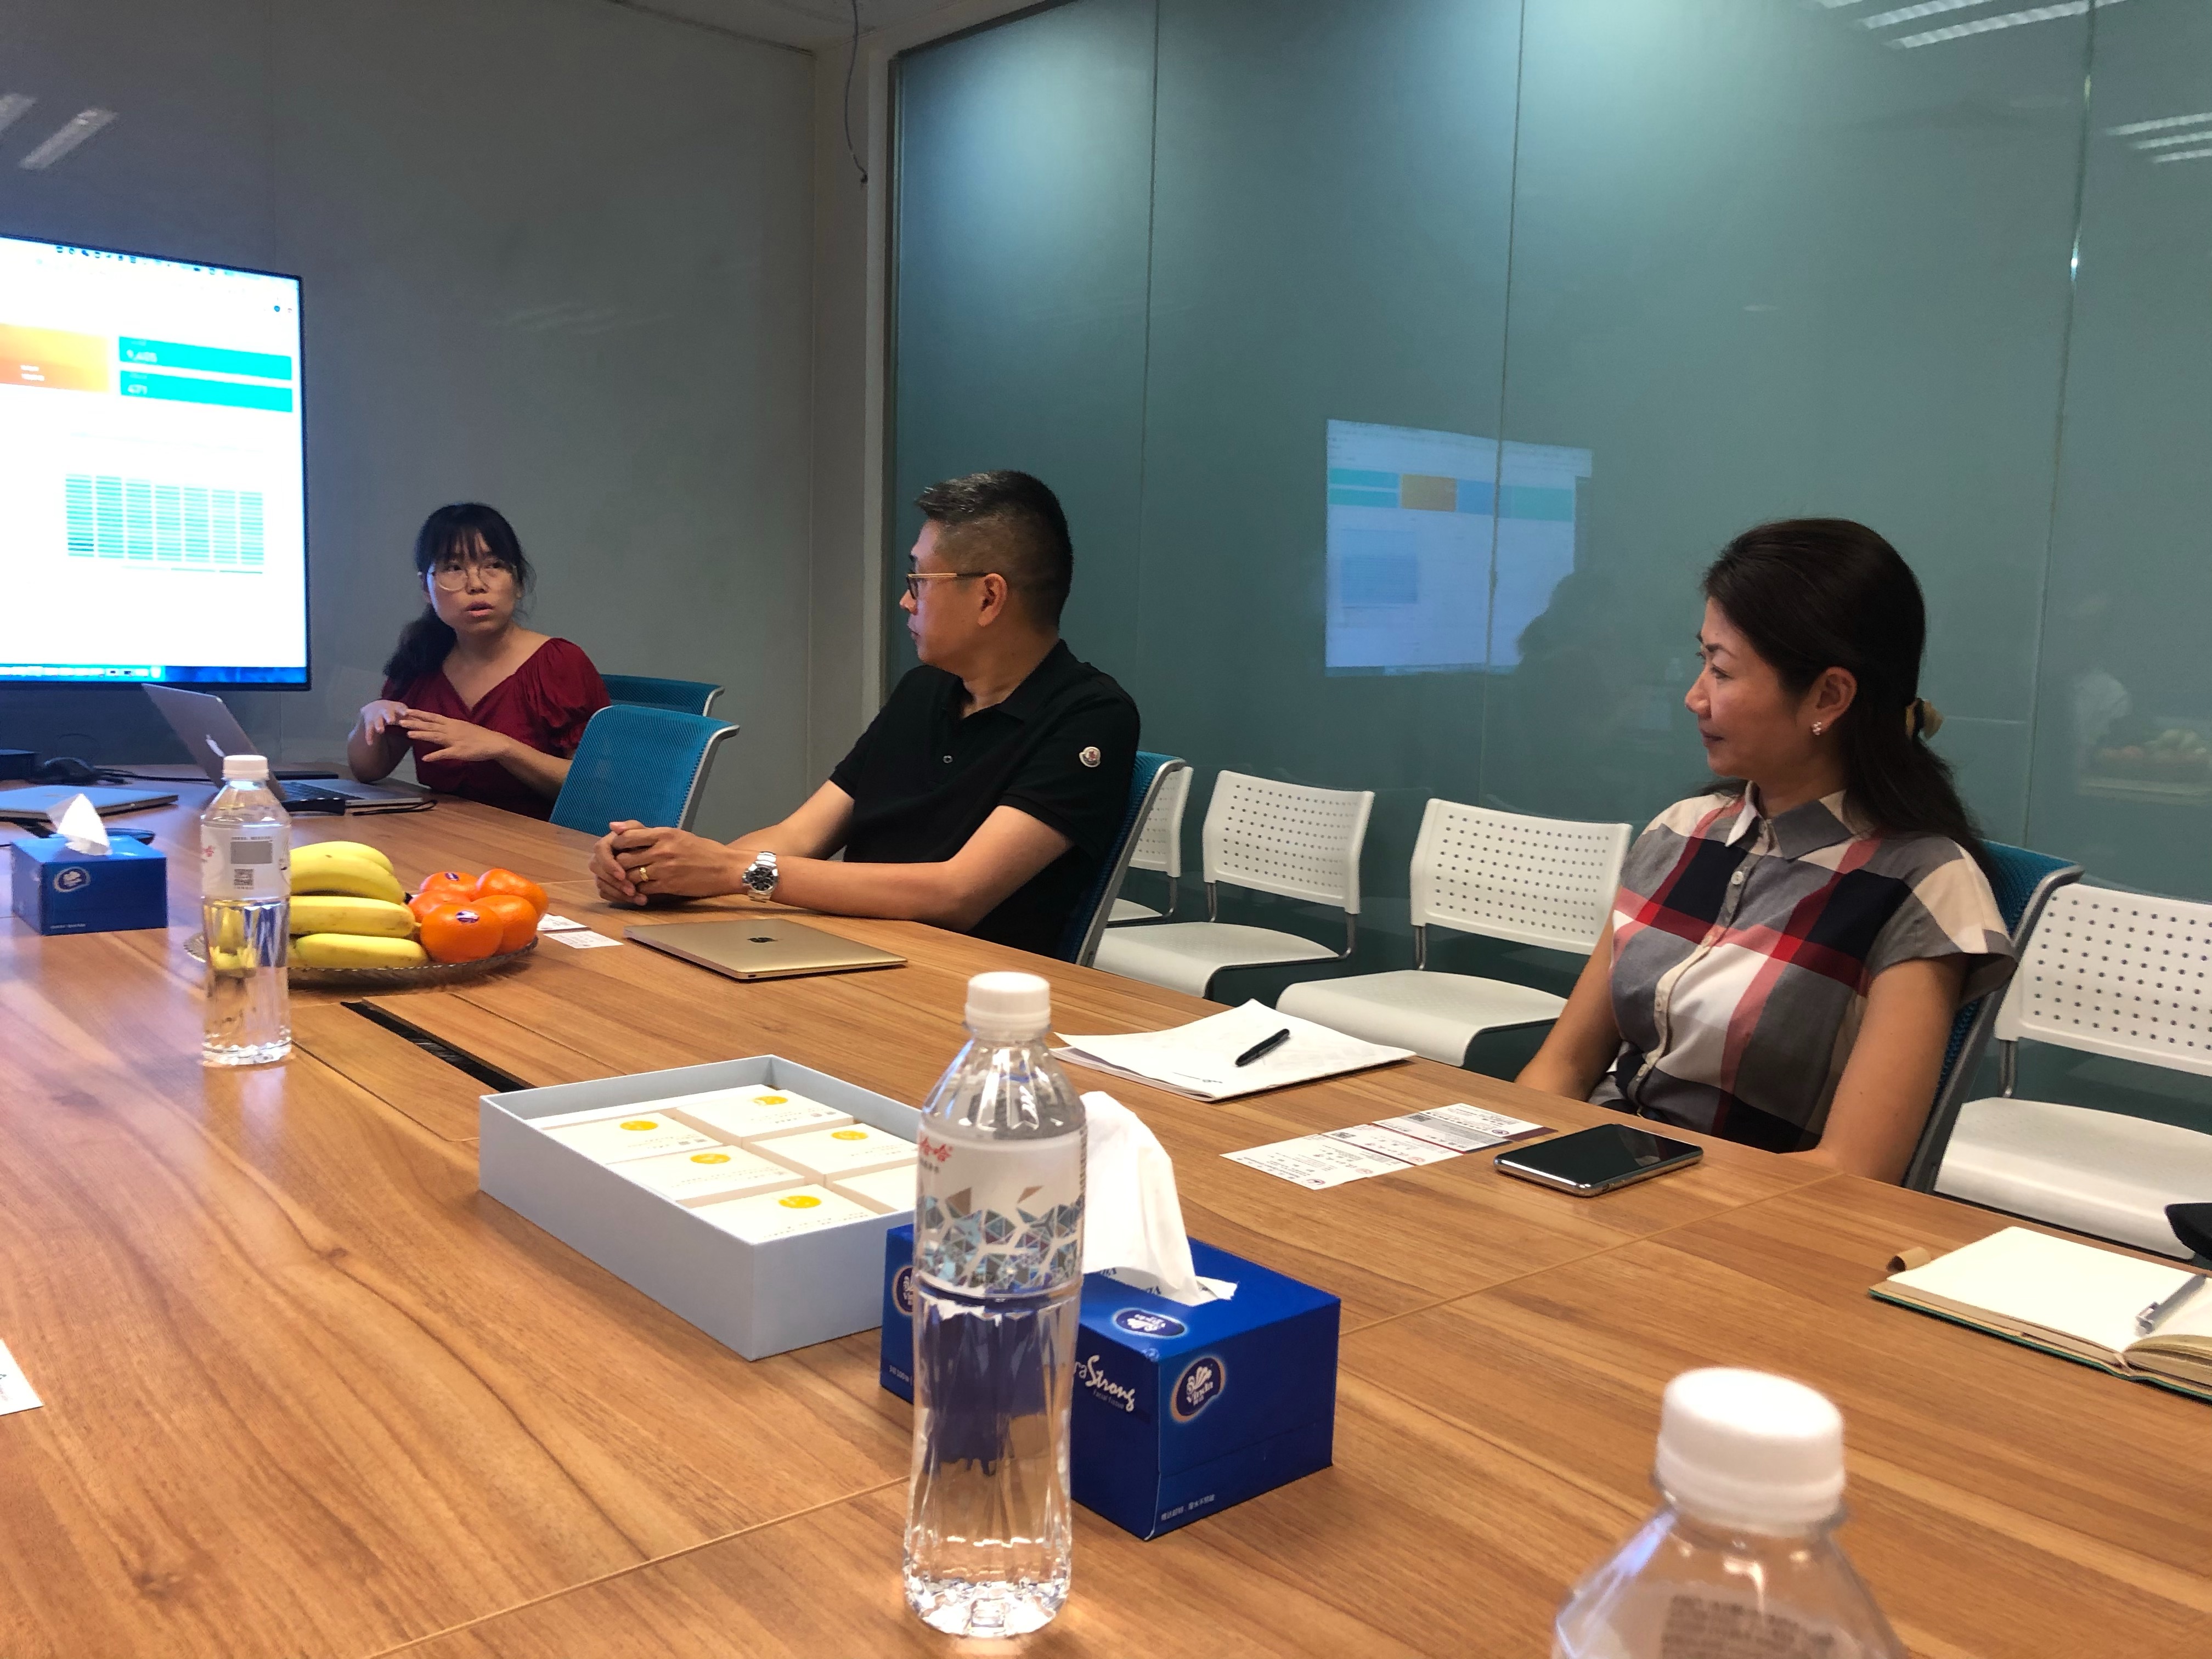 2019大中華數位學習發展交流會暨參訪-西安歐亞學院